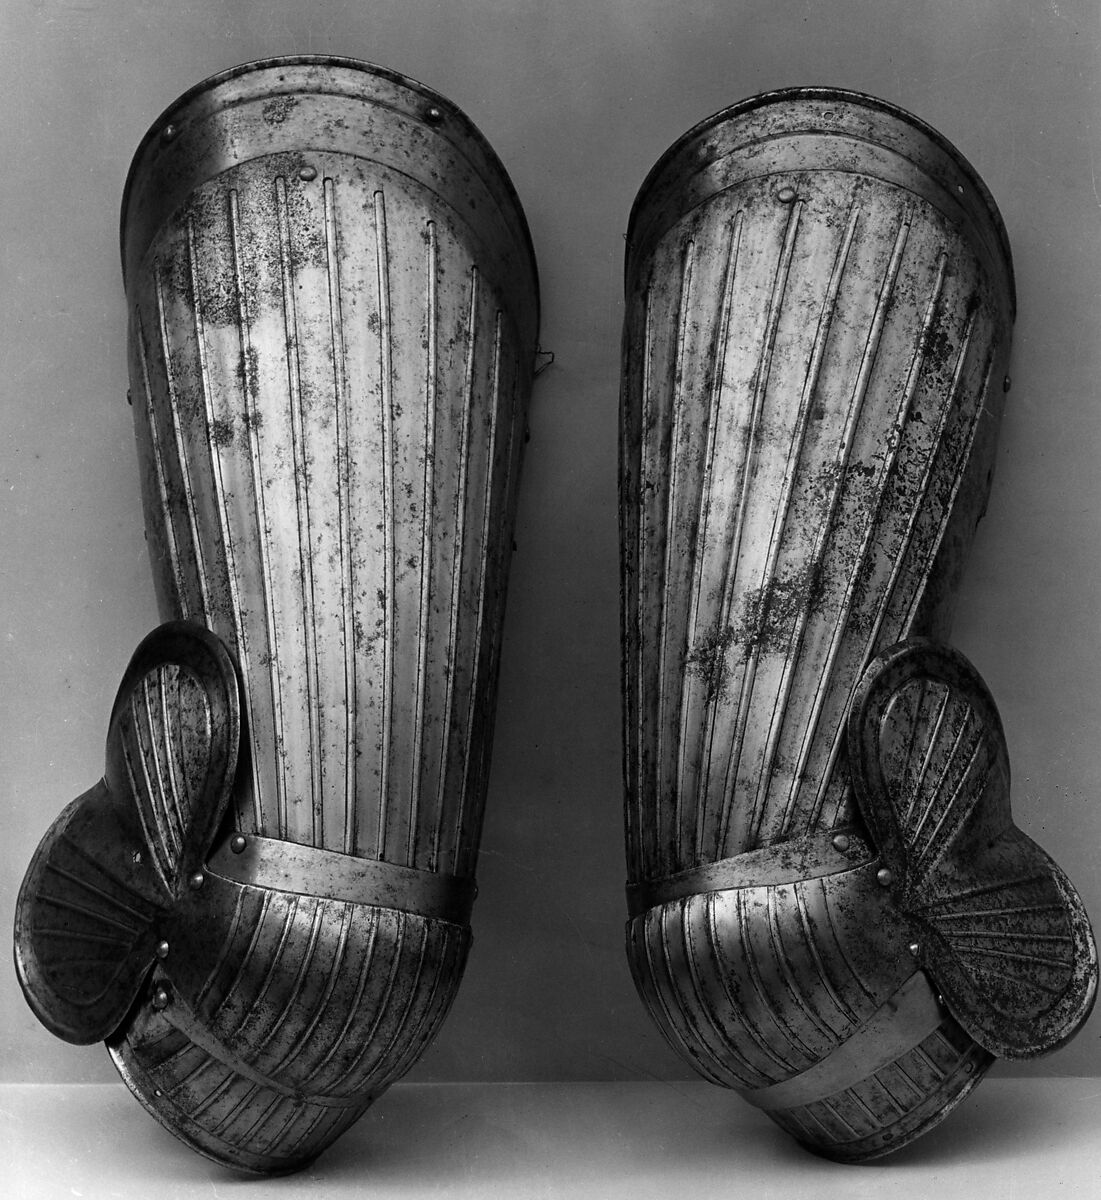 Pair of Thigh Defenses (Cuisses) with knee defenses (Poleyns), Steel, German, Nuremberg 